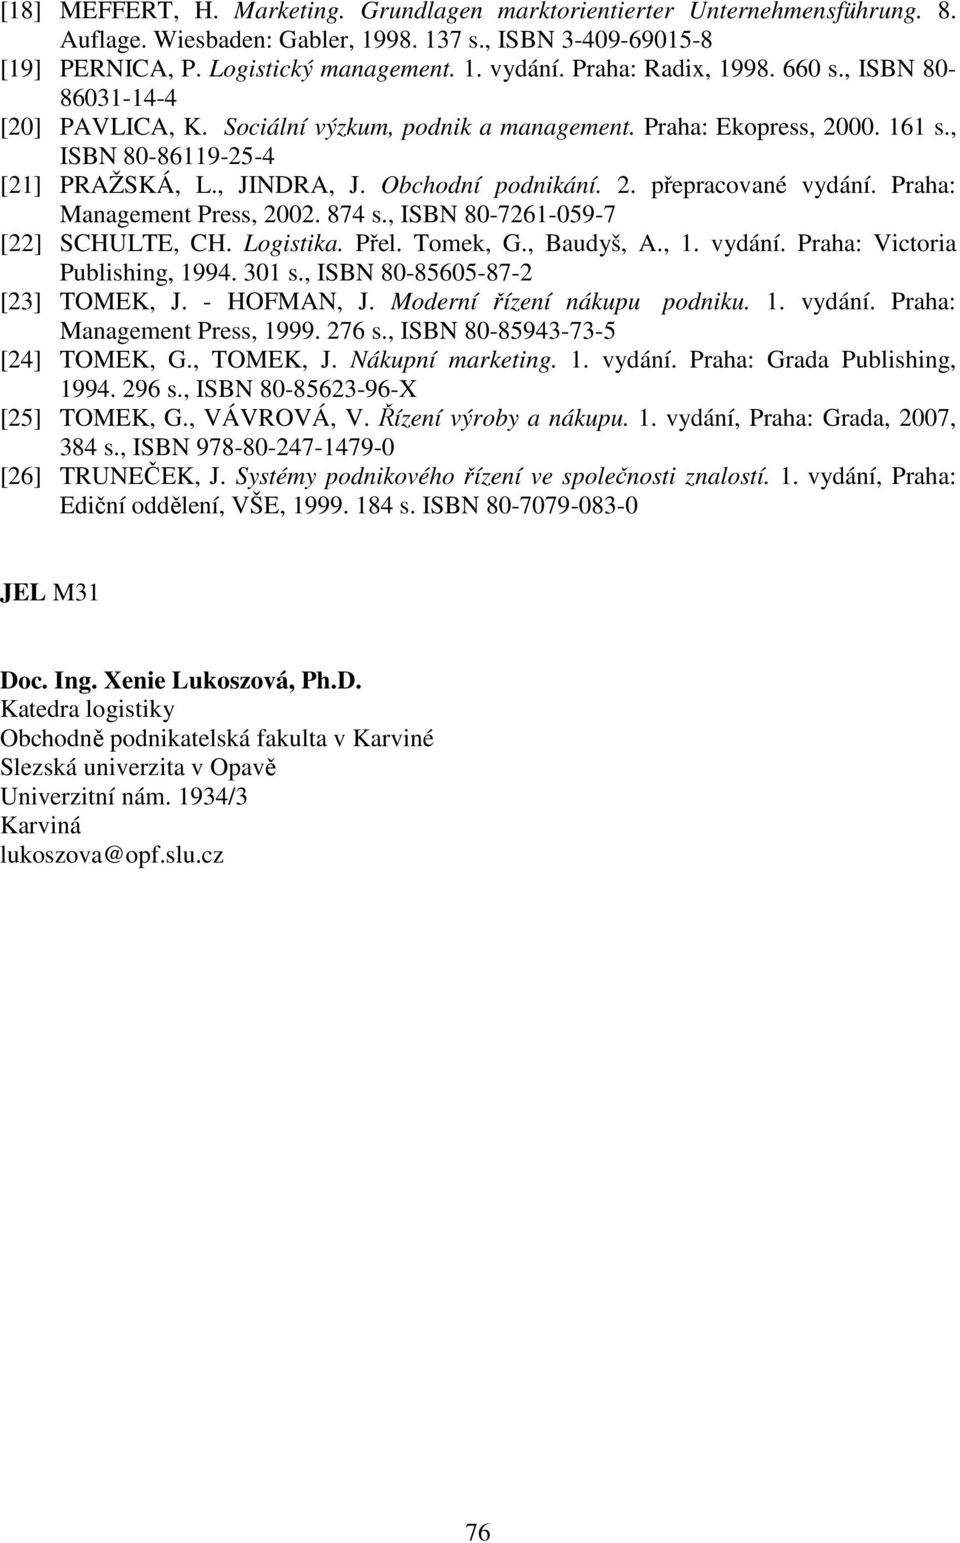 2. přepracované vydání. Praha: Management Press, 2002. 874 s., ISBN 80-7261-059-7 [22] SCHULTE, CH. Logistika. Přel. Tomek, G., Baudyš, A., 1. vydání. Praha: Victoria Publishing, 1994. 301 s.